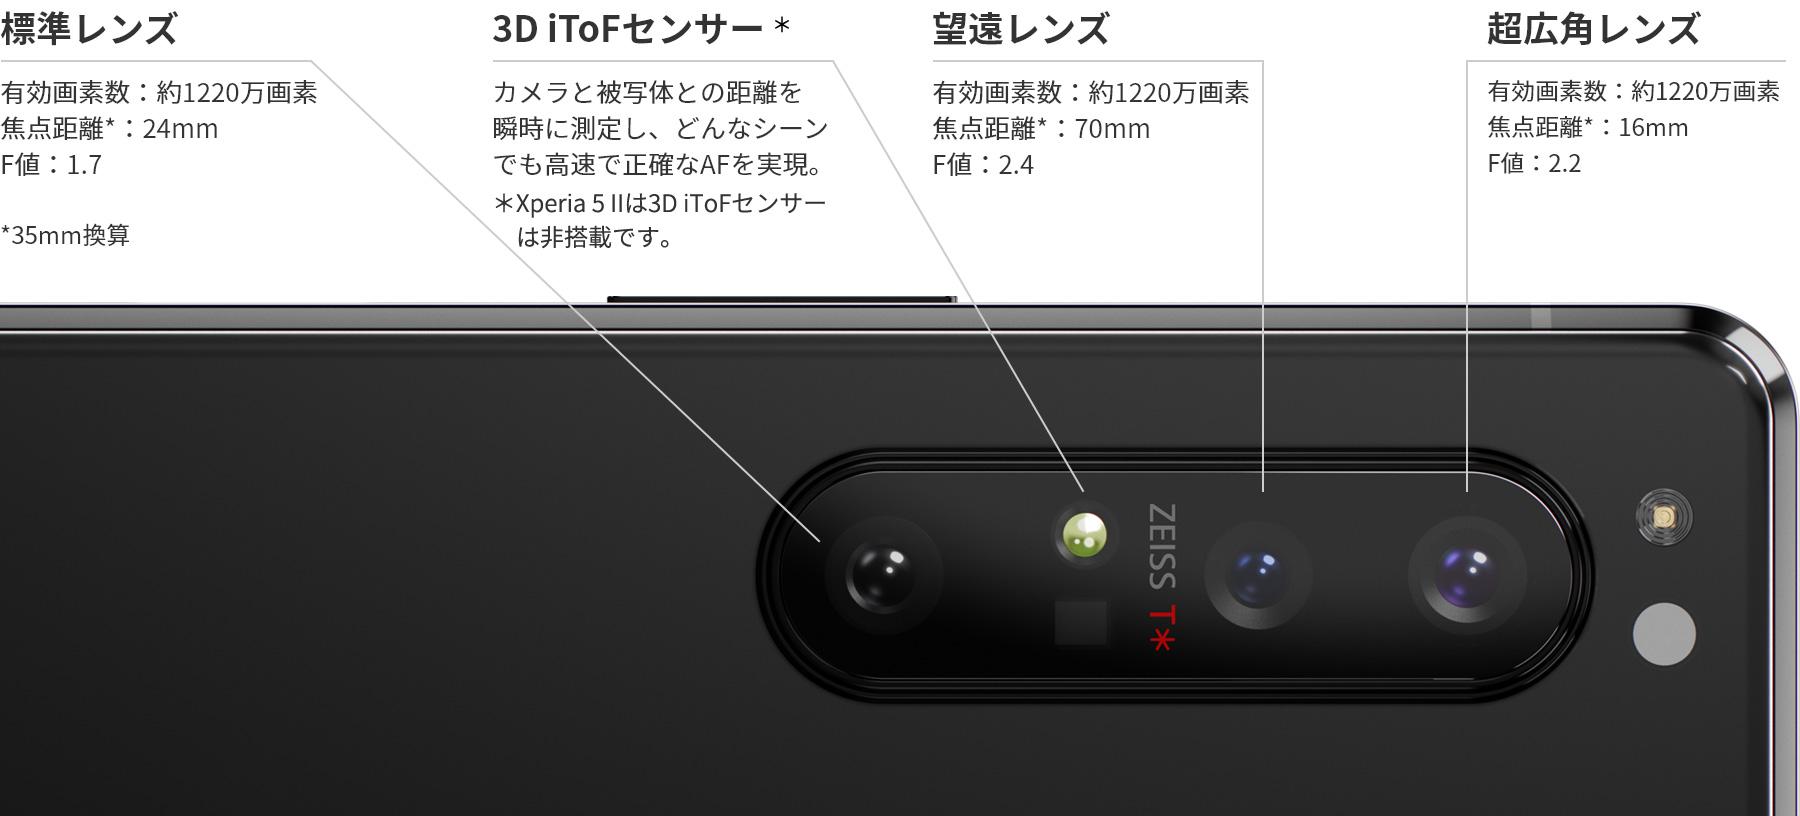 プロのカメラマンの要求に応えるために一新されたトリプルレンズカメラ＋3D iToFセンサー。